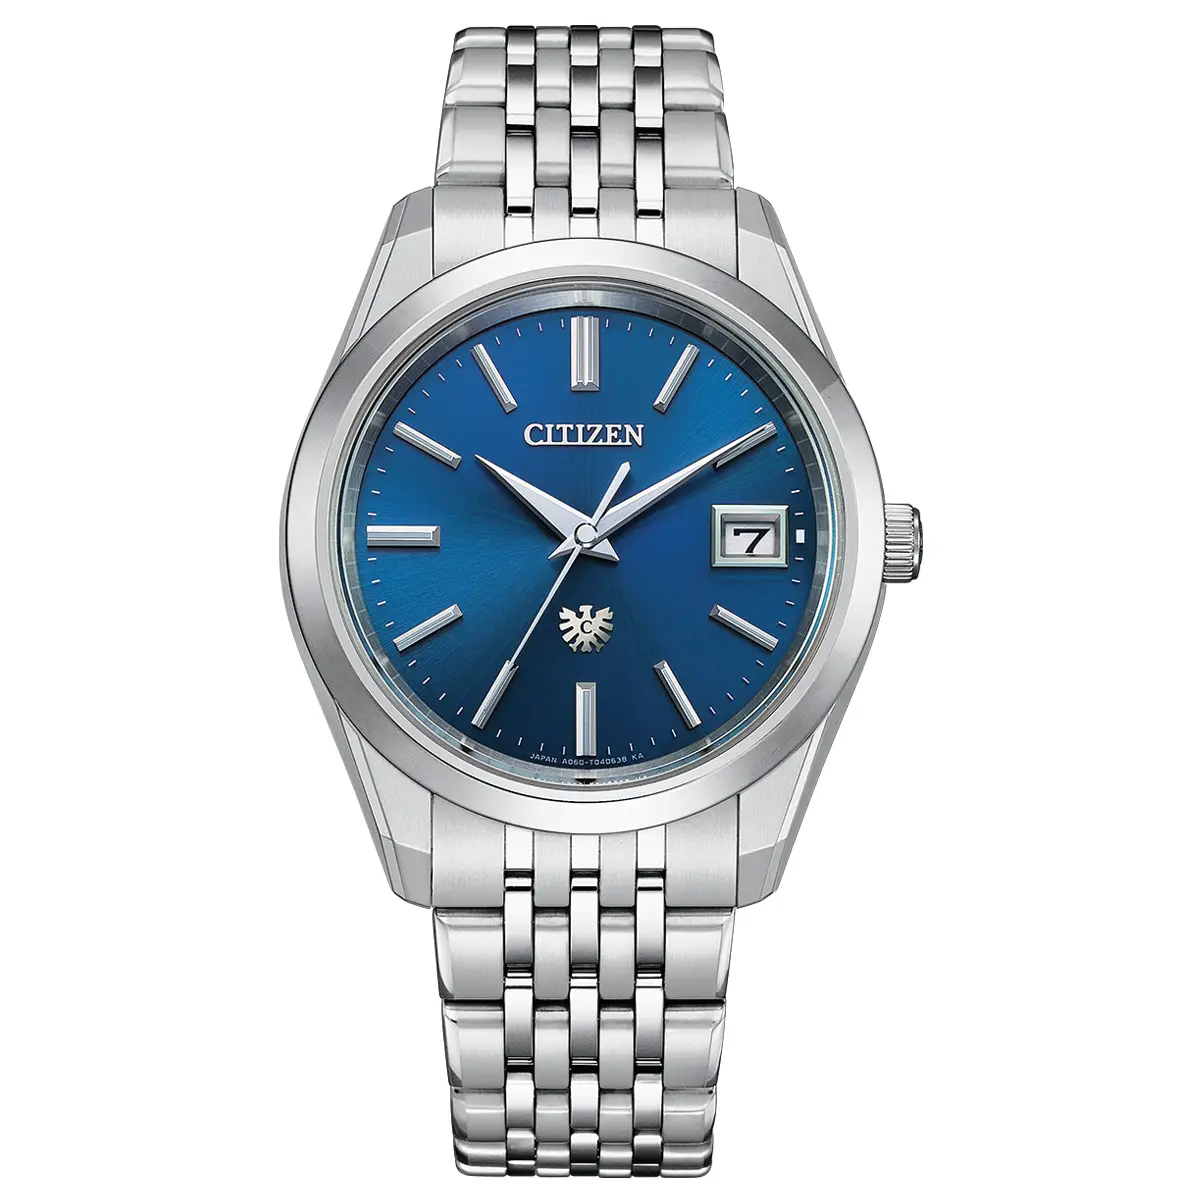 Đồng hồ The Citizen Eco-Drive Titanium AQ4100-57L với mặt số màu xanh. Dây đeo bằng titanium. Thân vỏ bằng titanium.